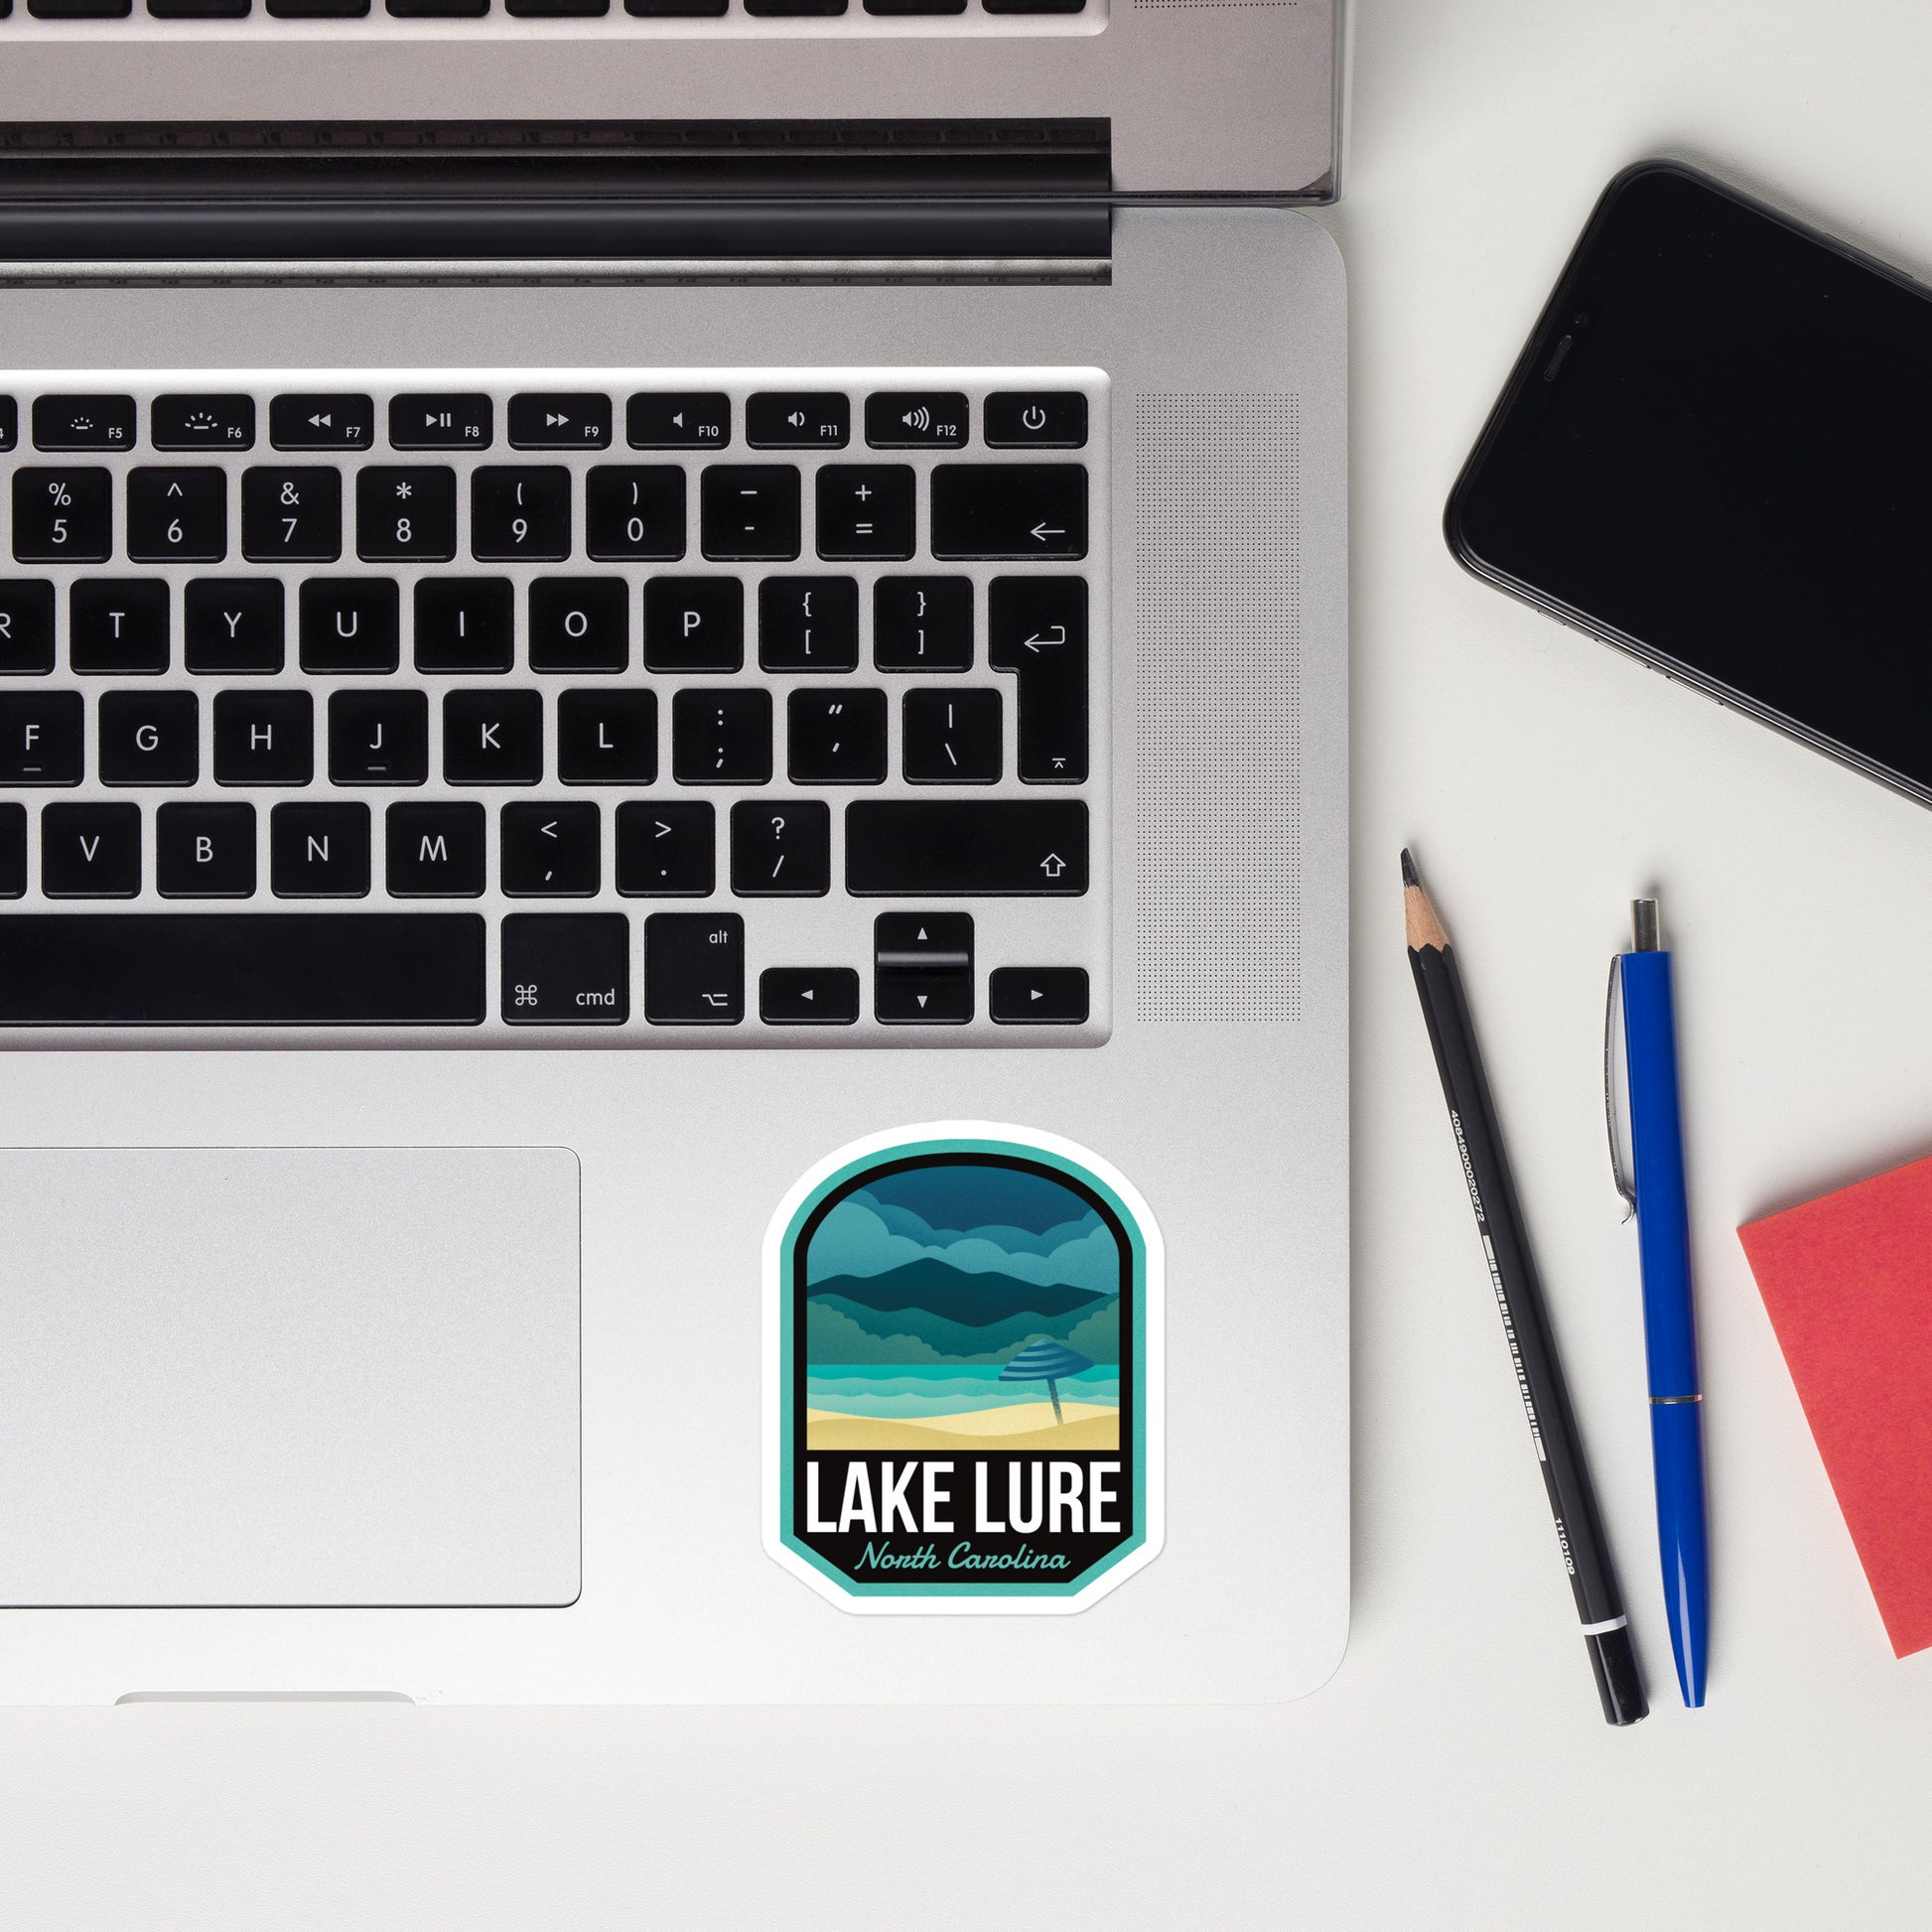 A sticker of Lake Lure North Carolina on a laptop